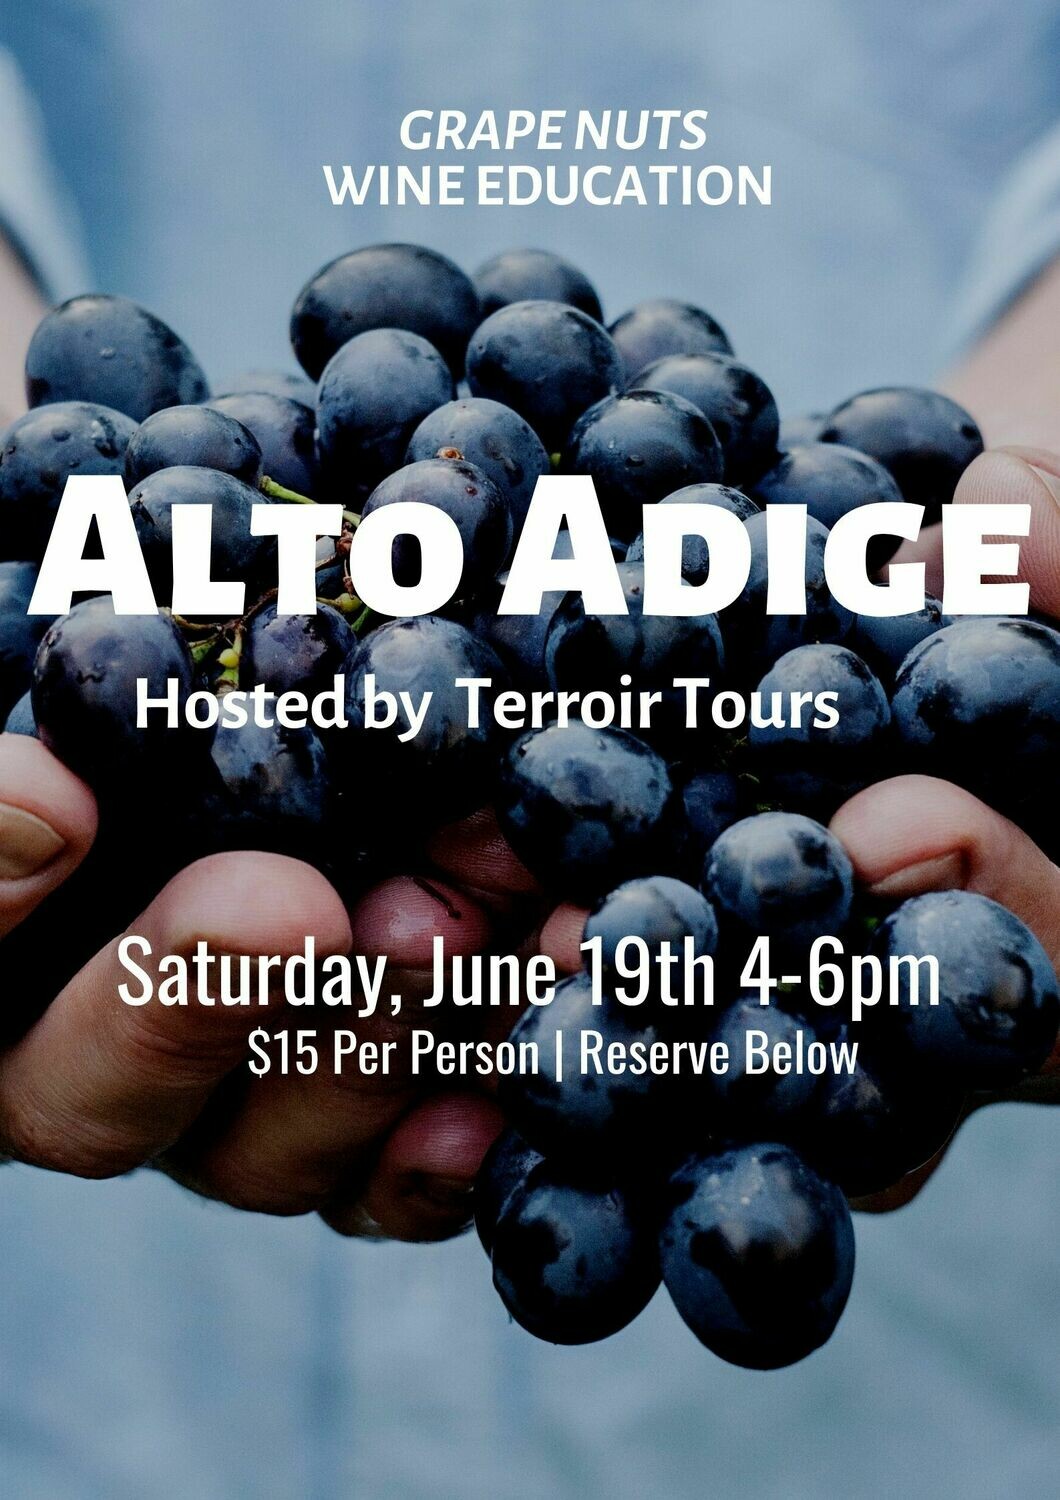 Alto-Adige - Saturday, June 19th , 4-6pm